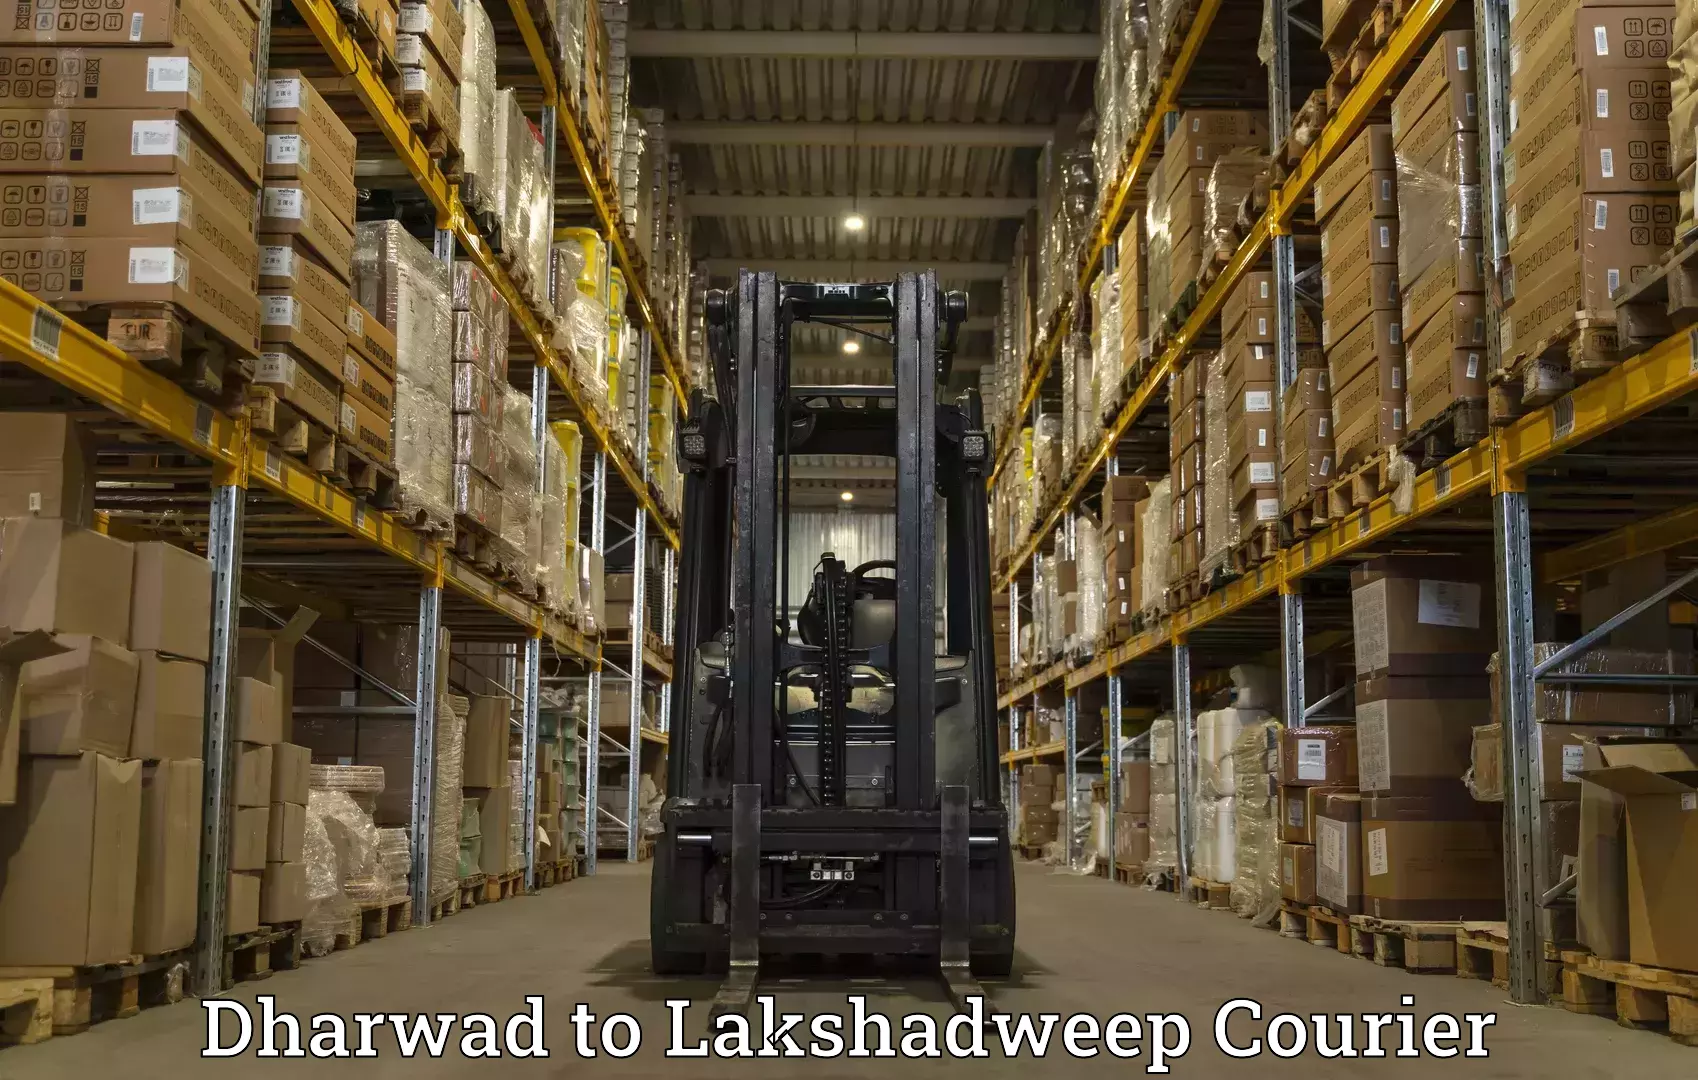 High-priority parcel service Dharwad to Lakshadweep